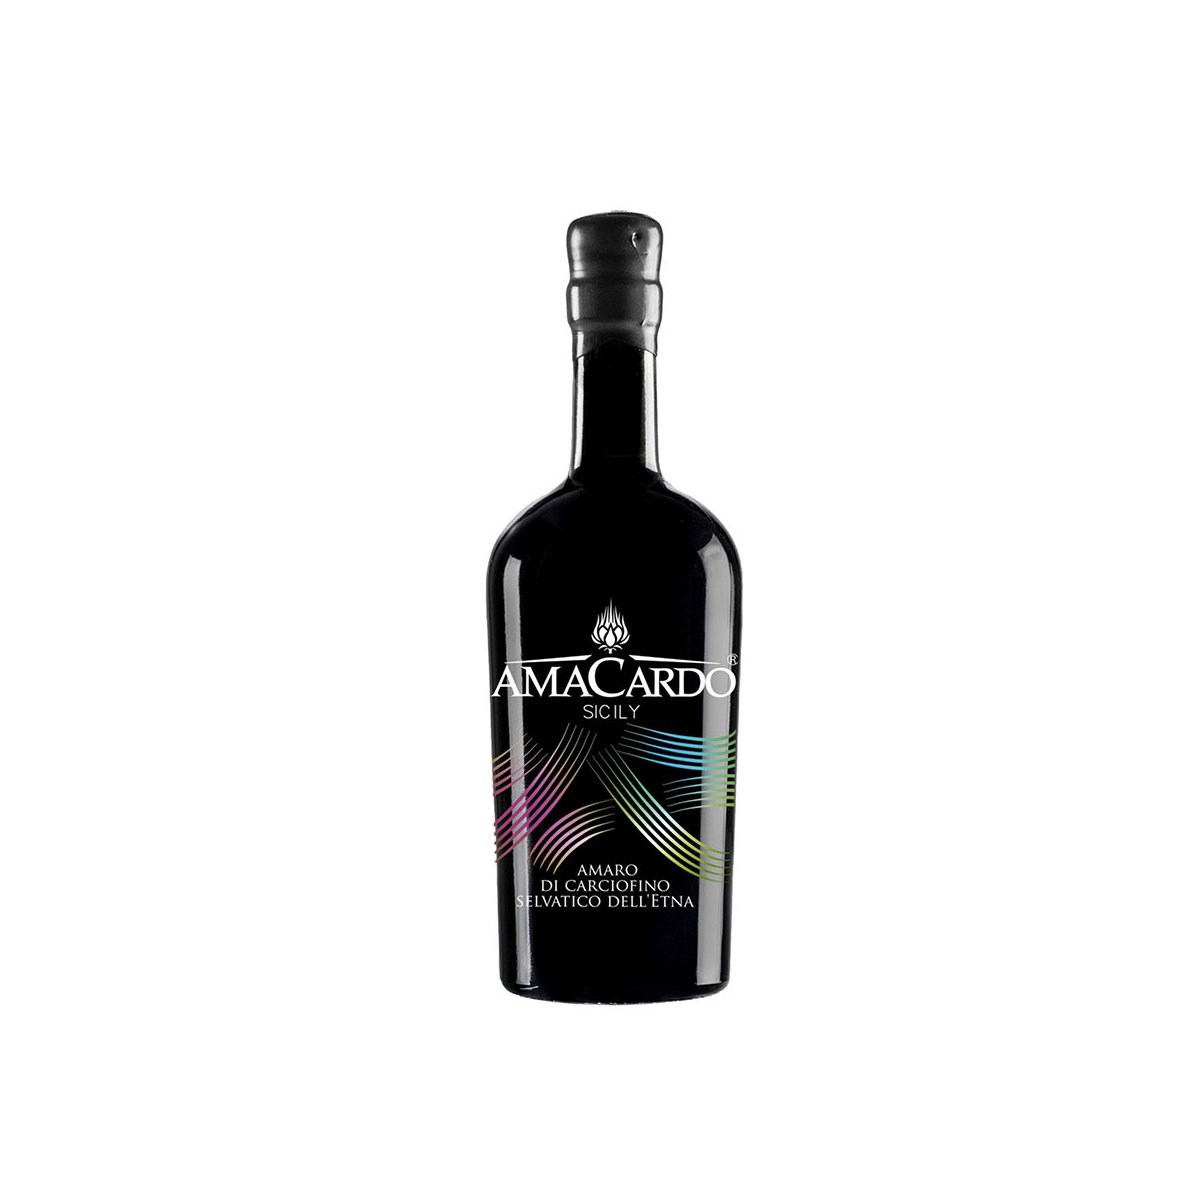 Amaro di Carciofino selvatico dell'Etna  Amacardo Sicily - Sicilia